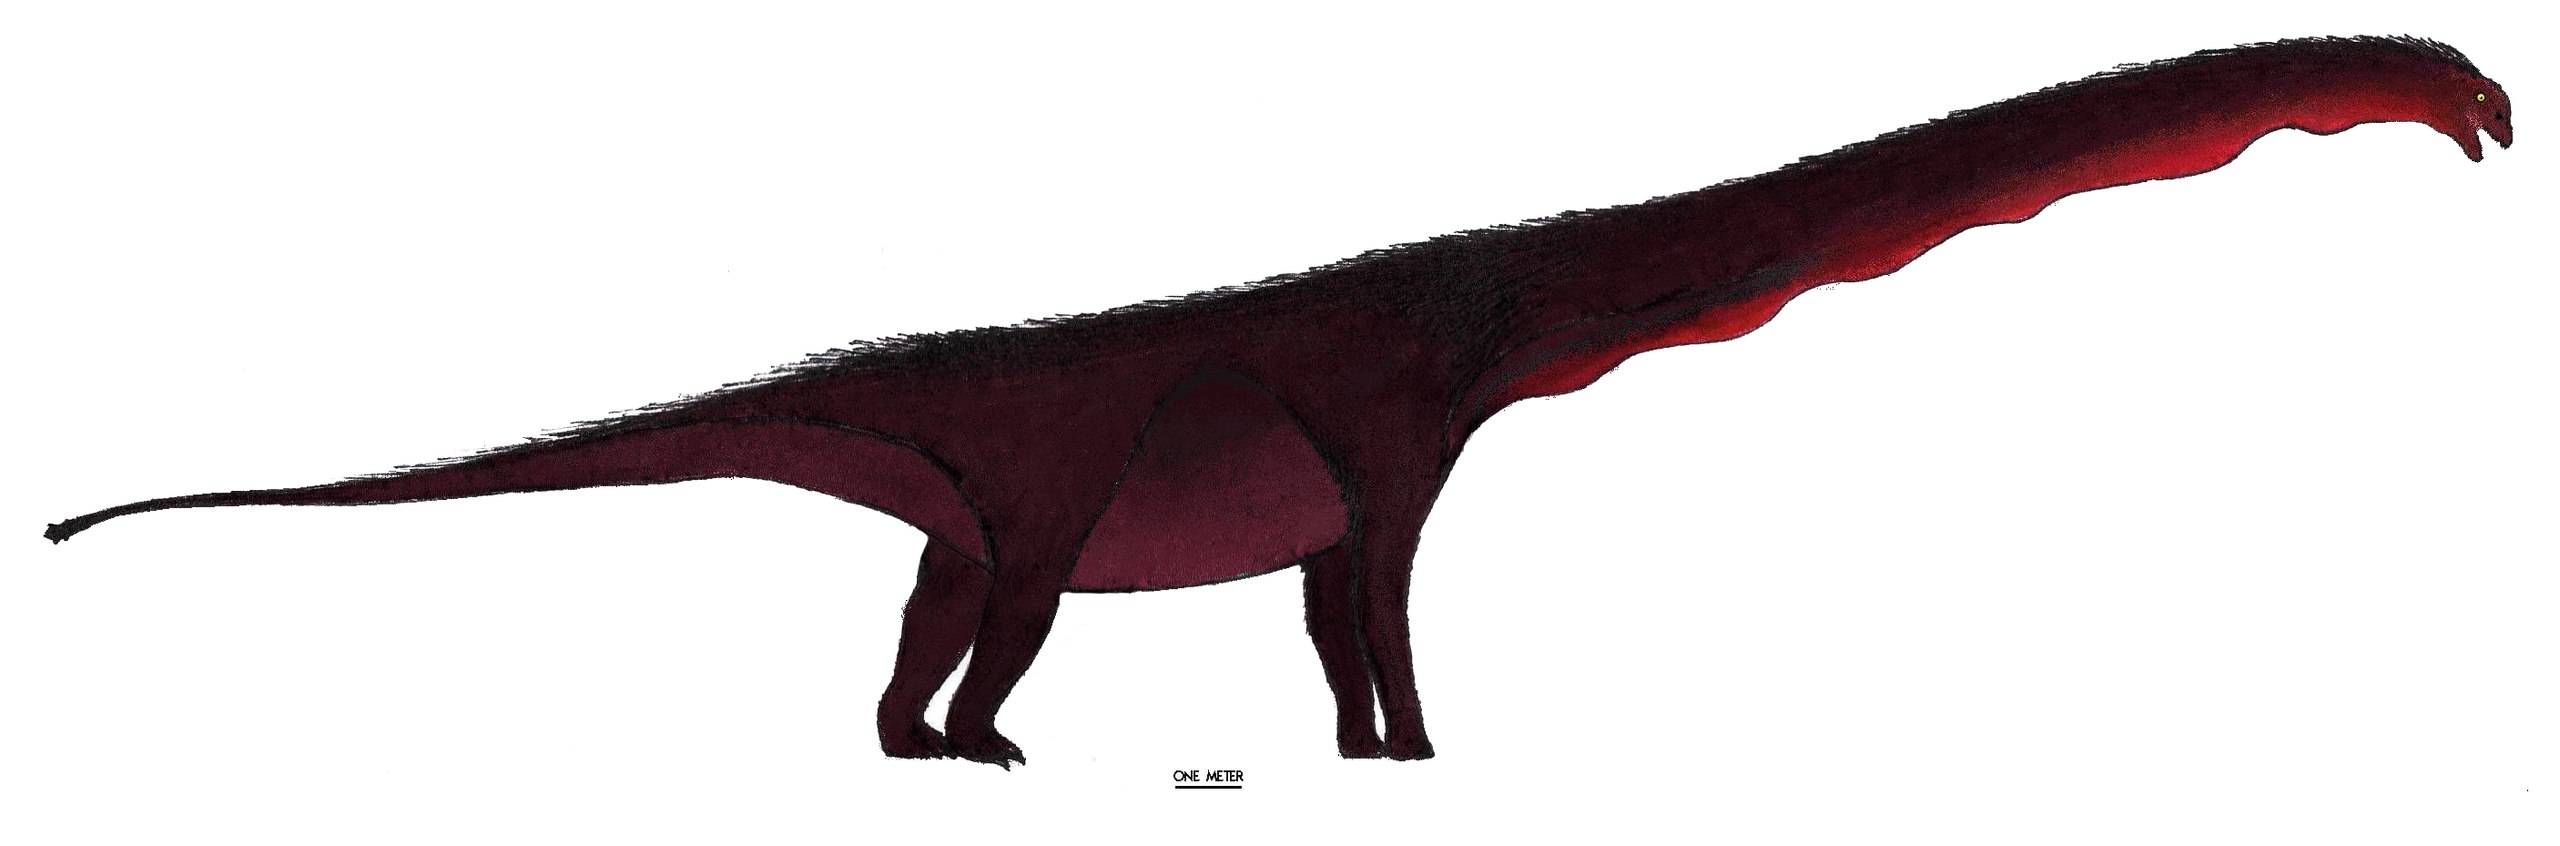 Rekonstrukce přibližného vzezření středně jurského čínského sauropoda xinjiangtitana. I přes své obří rozměry byl poměrně lehce stavěným zástupcem své skupiny a hmotností se ani zdaleka nepřibližoval například největším jihoamerickým titanosaurům. S 